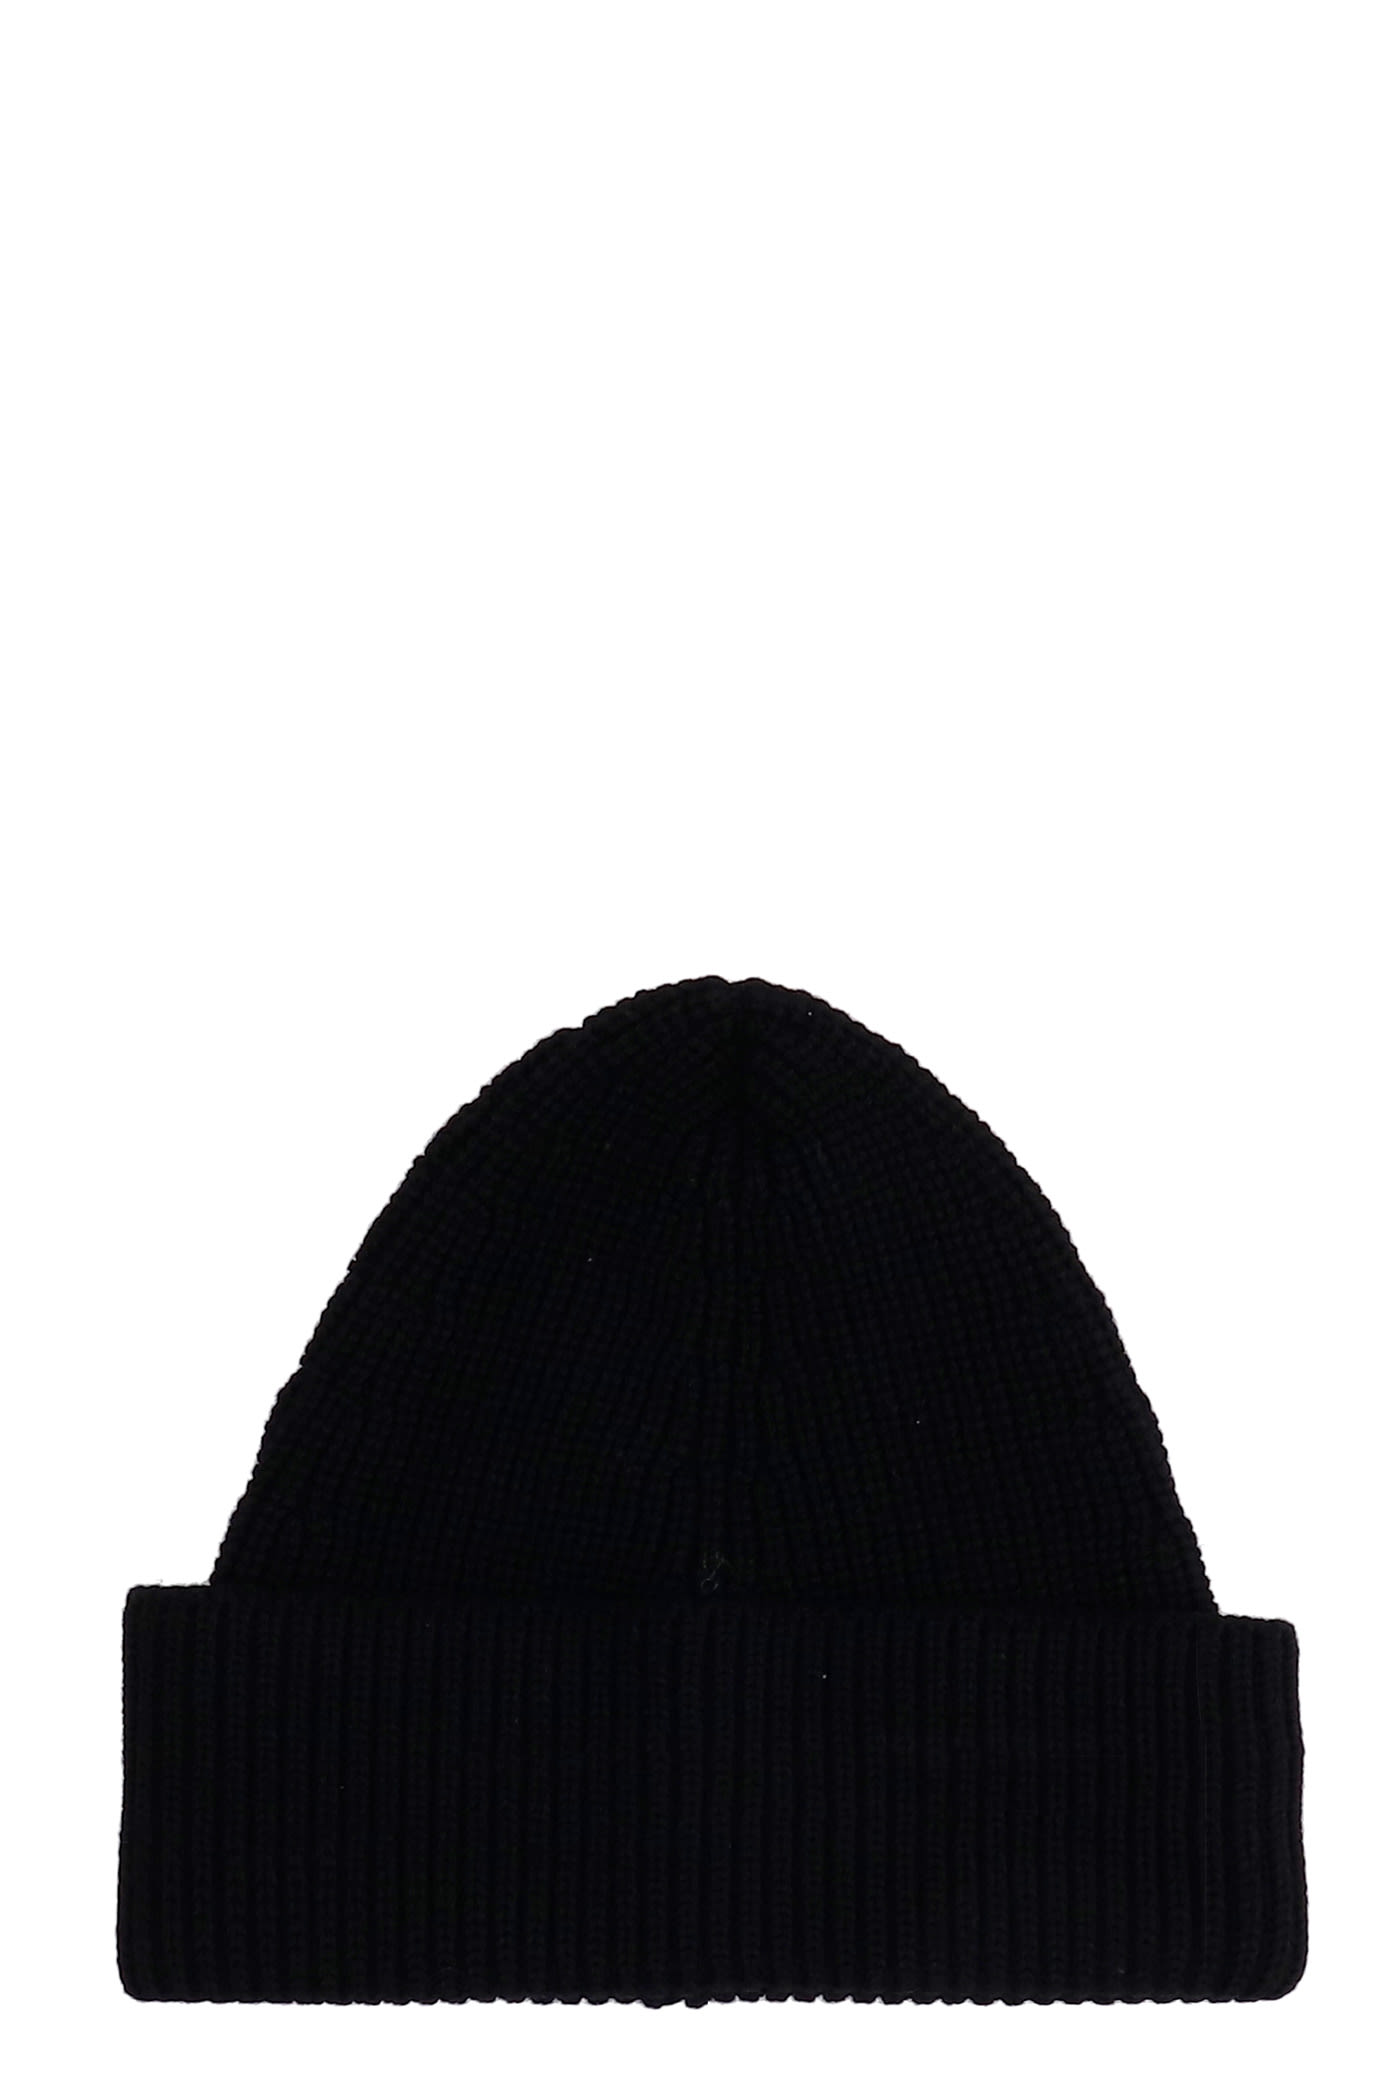 Maison Margiela Hats In Black Wool